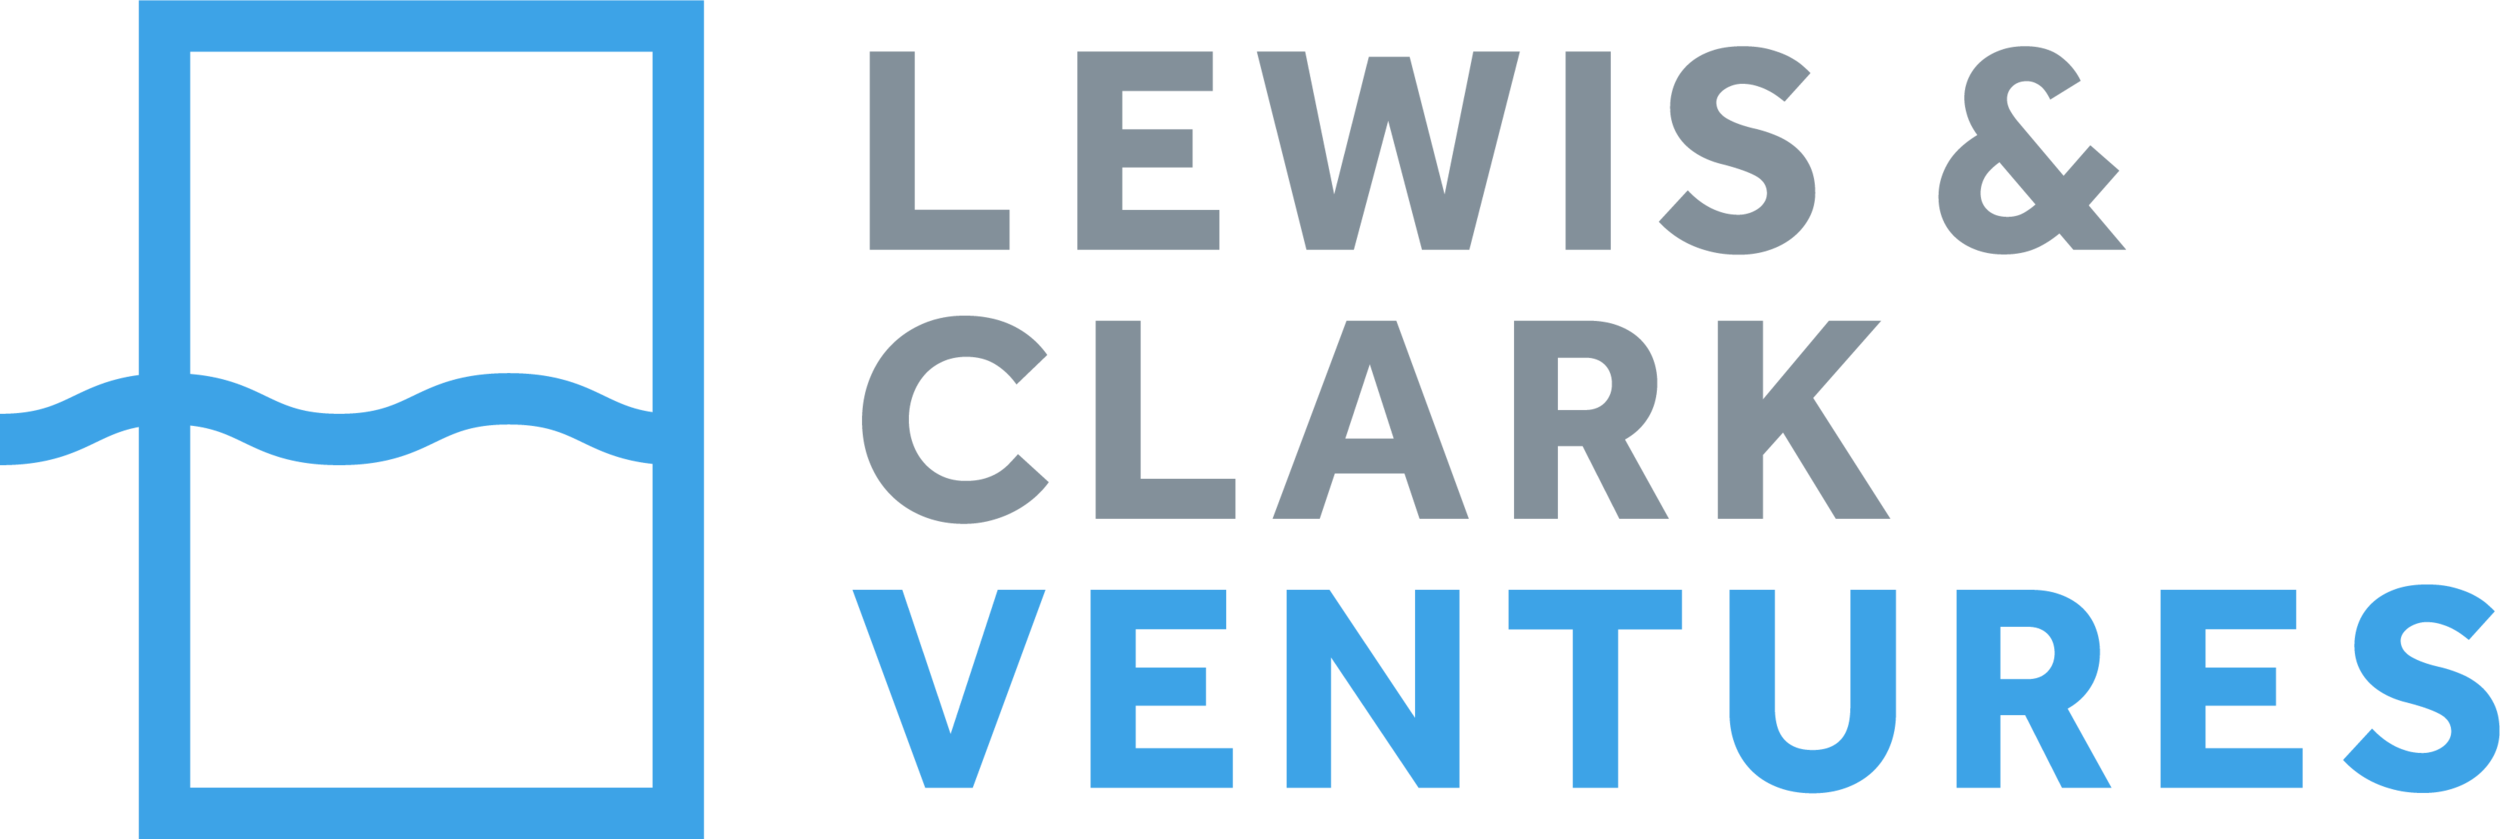 Lewis & Clark Ventures.png